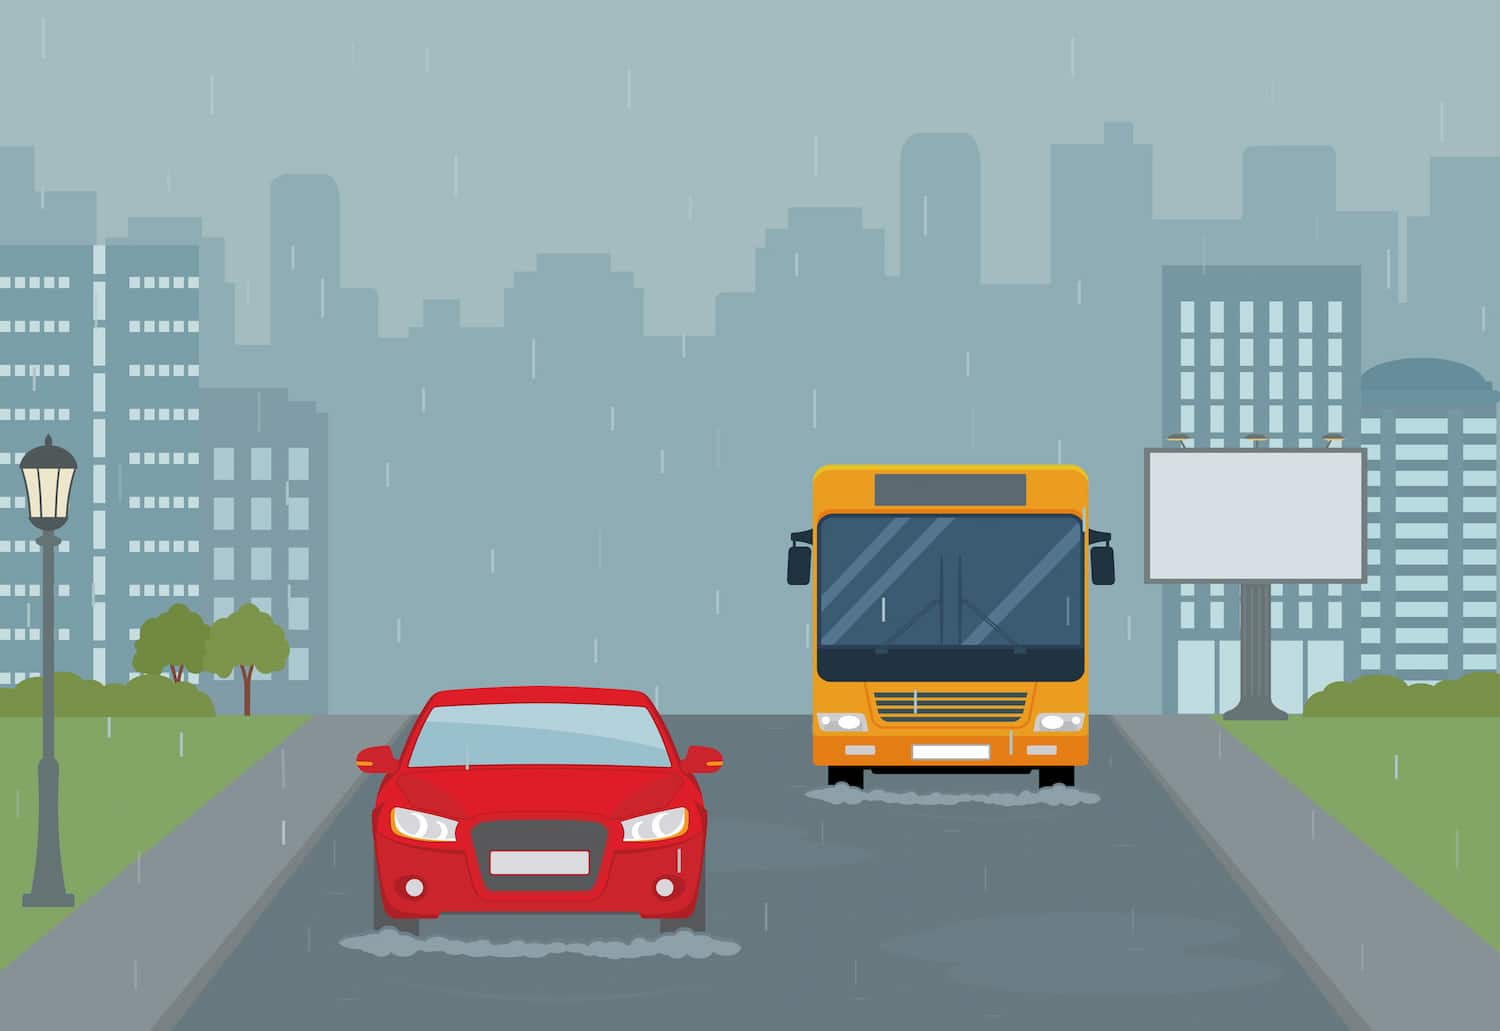 Ilustración de una carretera mojada por la que circula un coche y un autobús